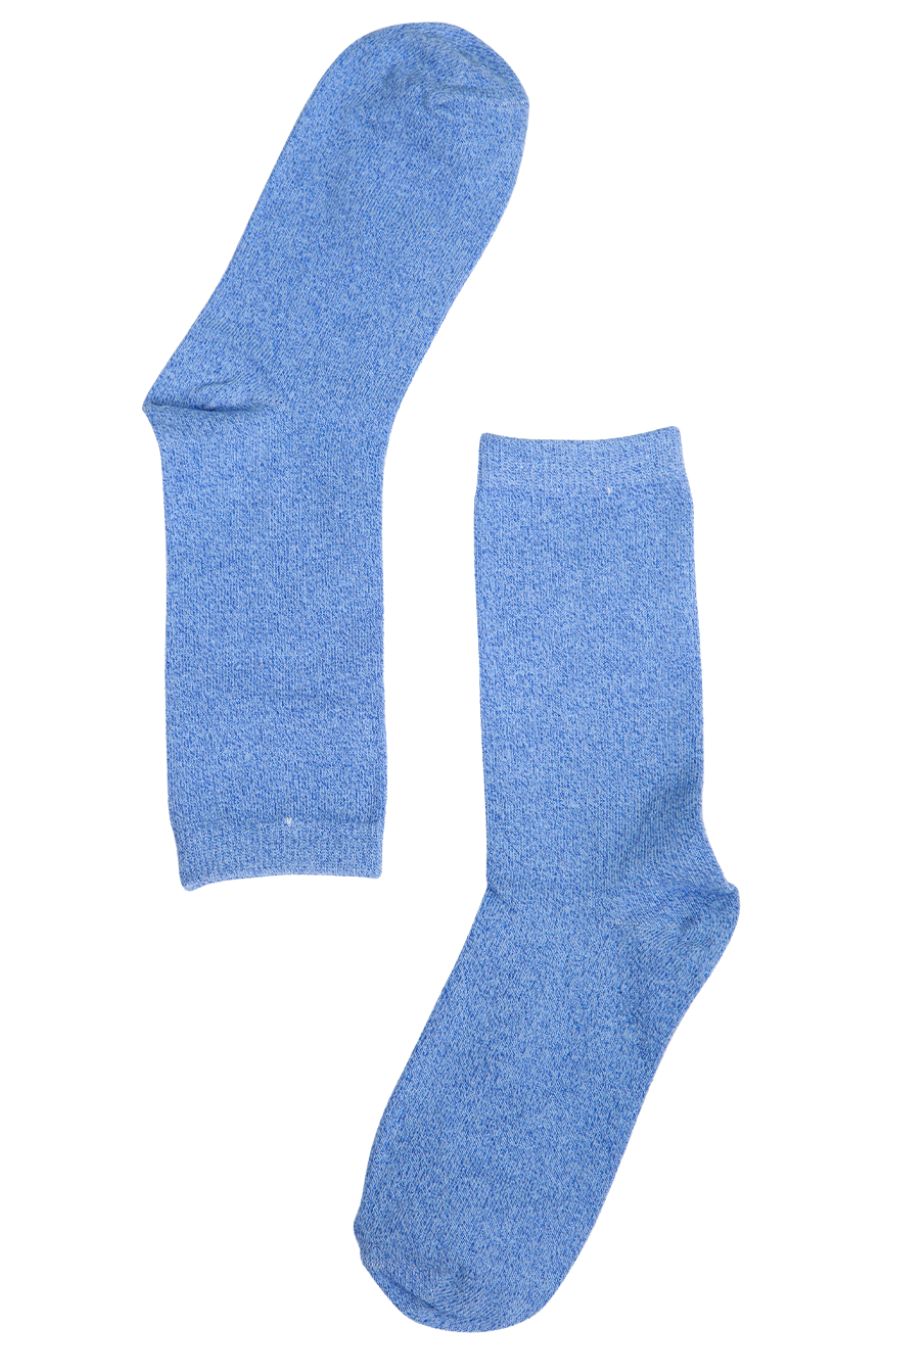 blue sparkly glitter ankle socks